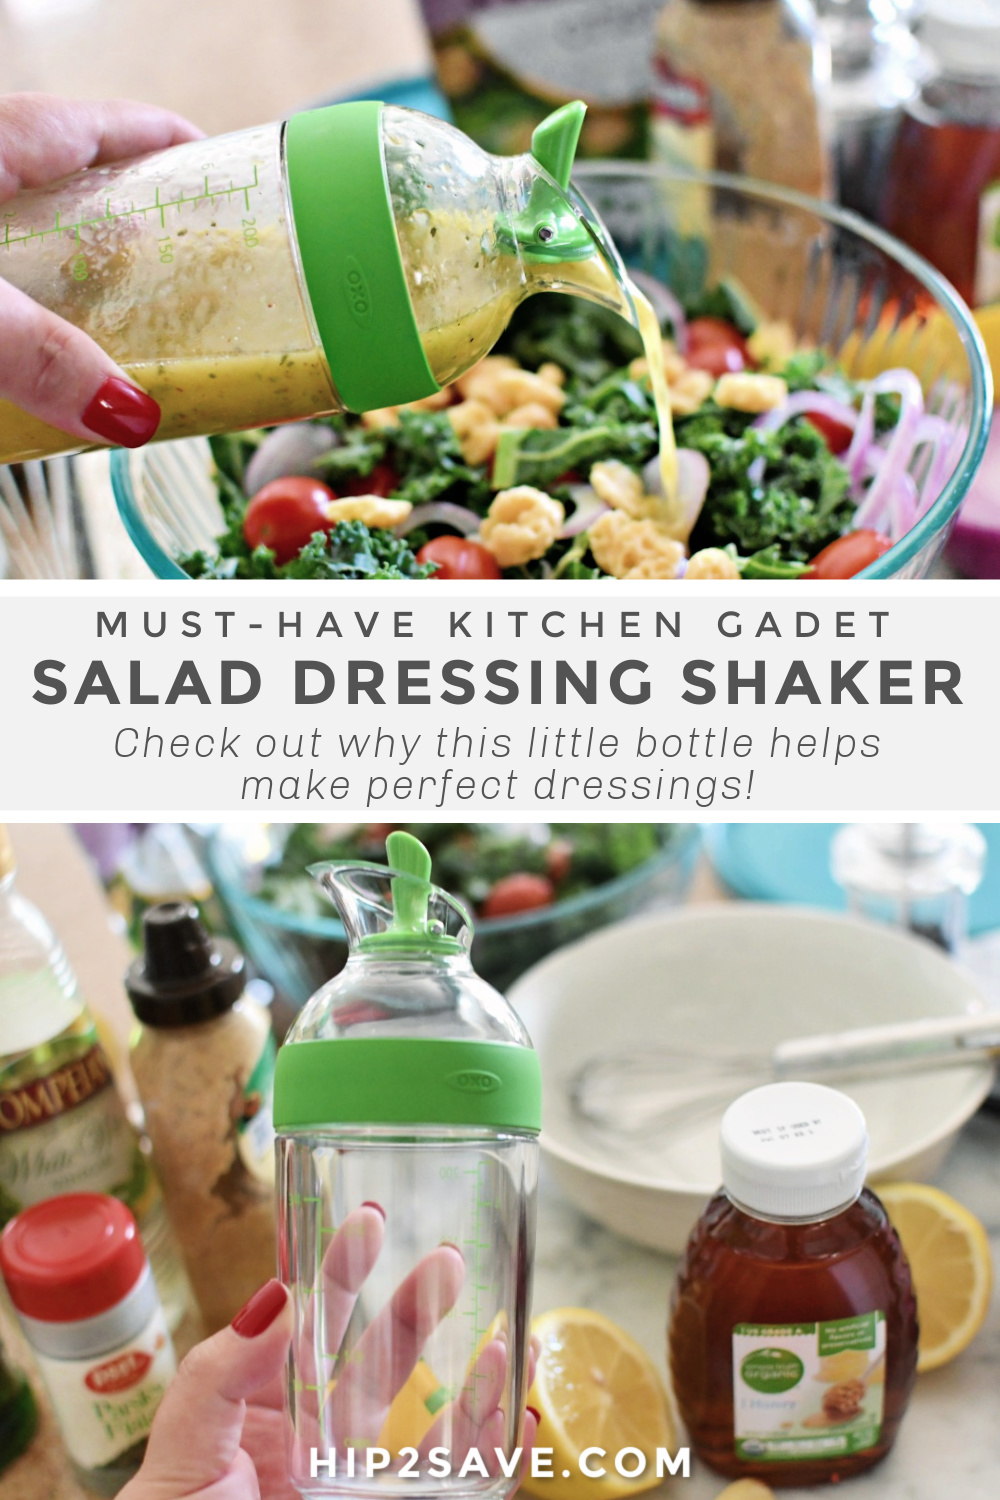 https://hip2save.com/wp-content/uploads/2020/08/salad-dressing-shaker-pinterest.jpg?fit=1000%2C1500&strip=all